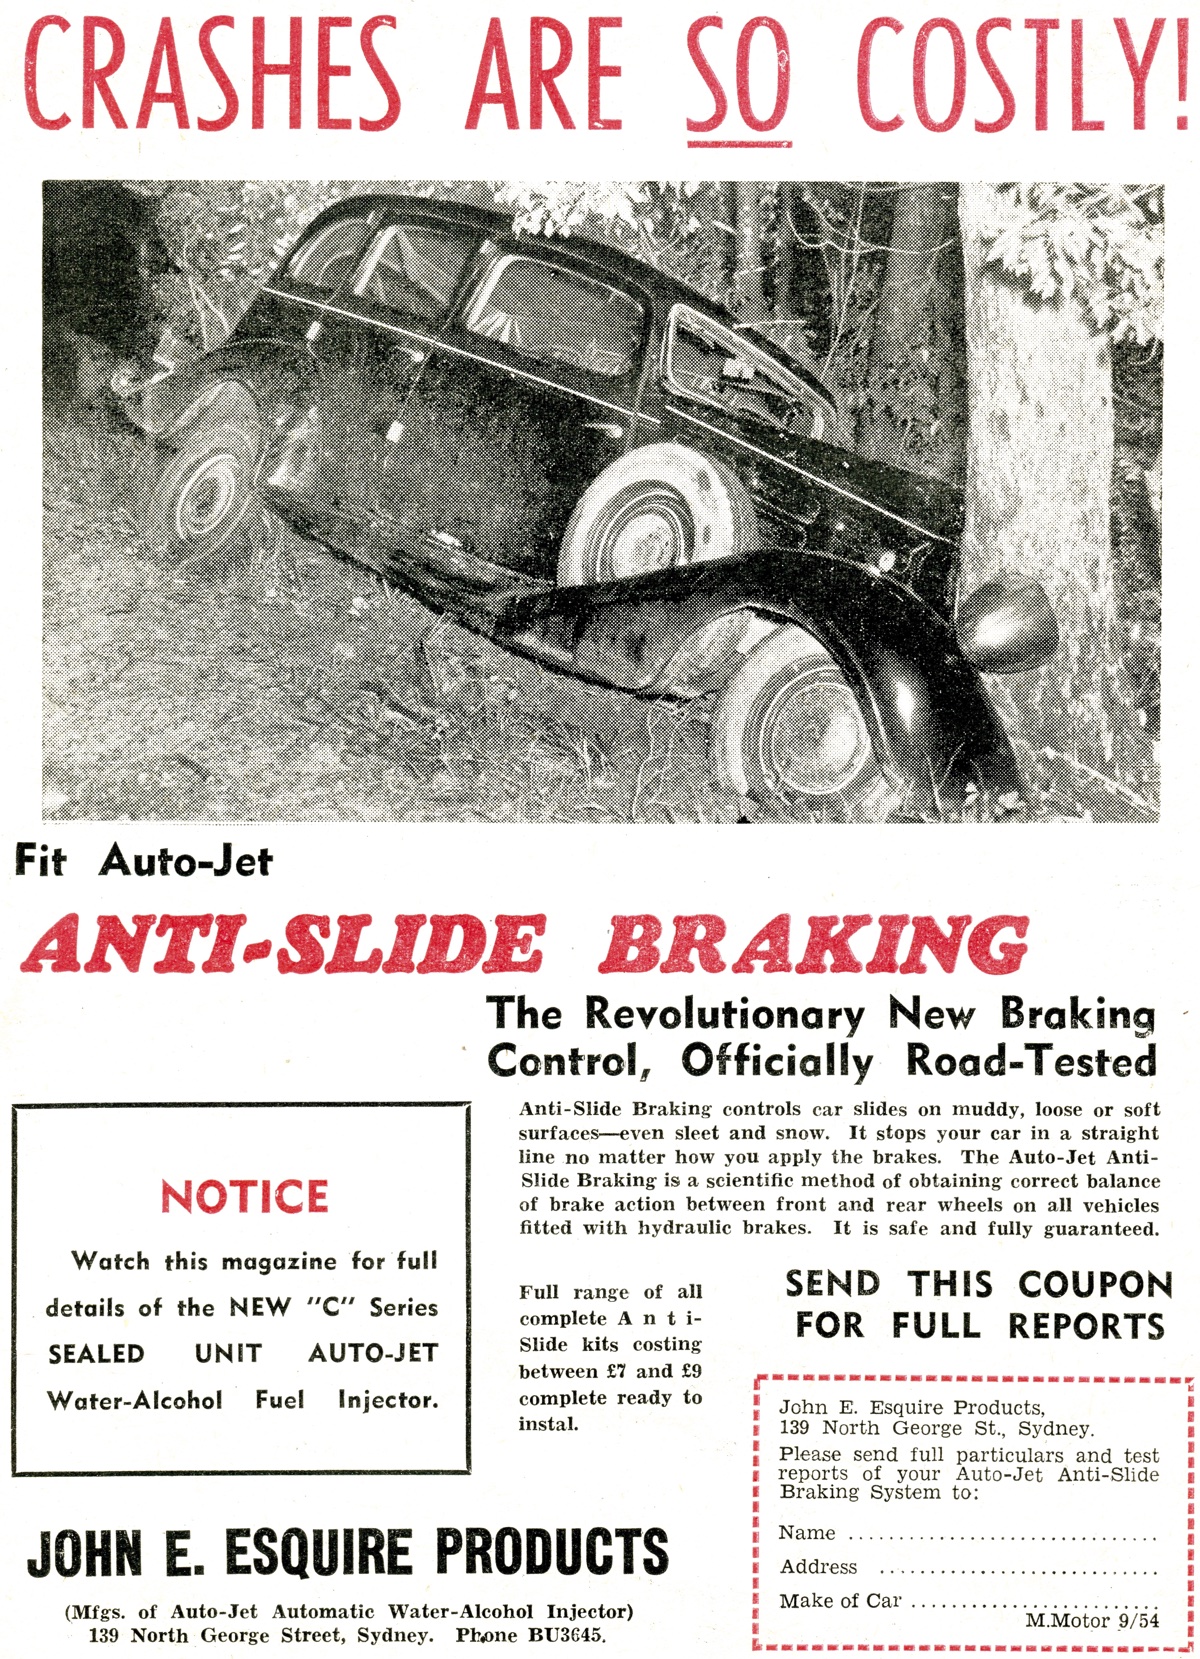 1954 Anti-Slide Braking